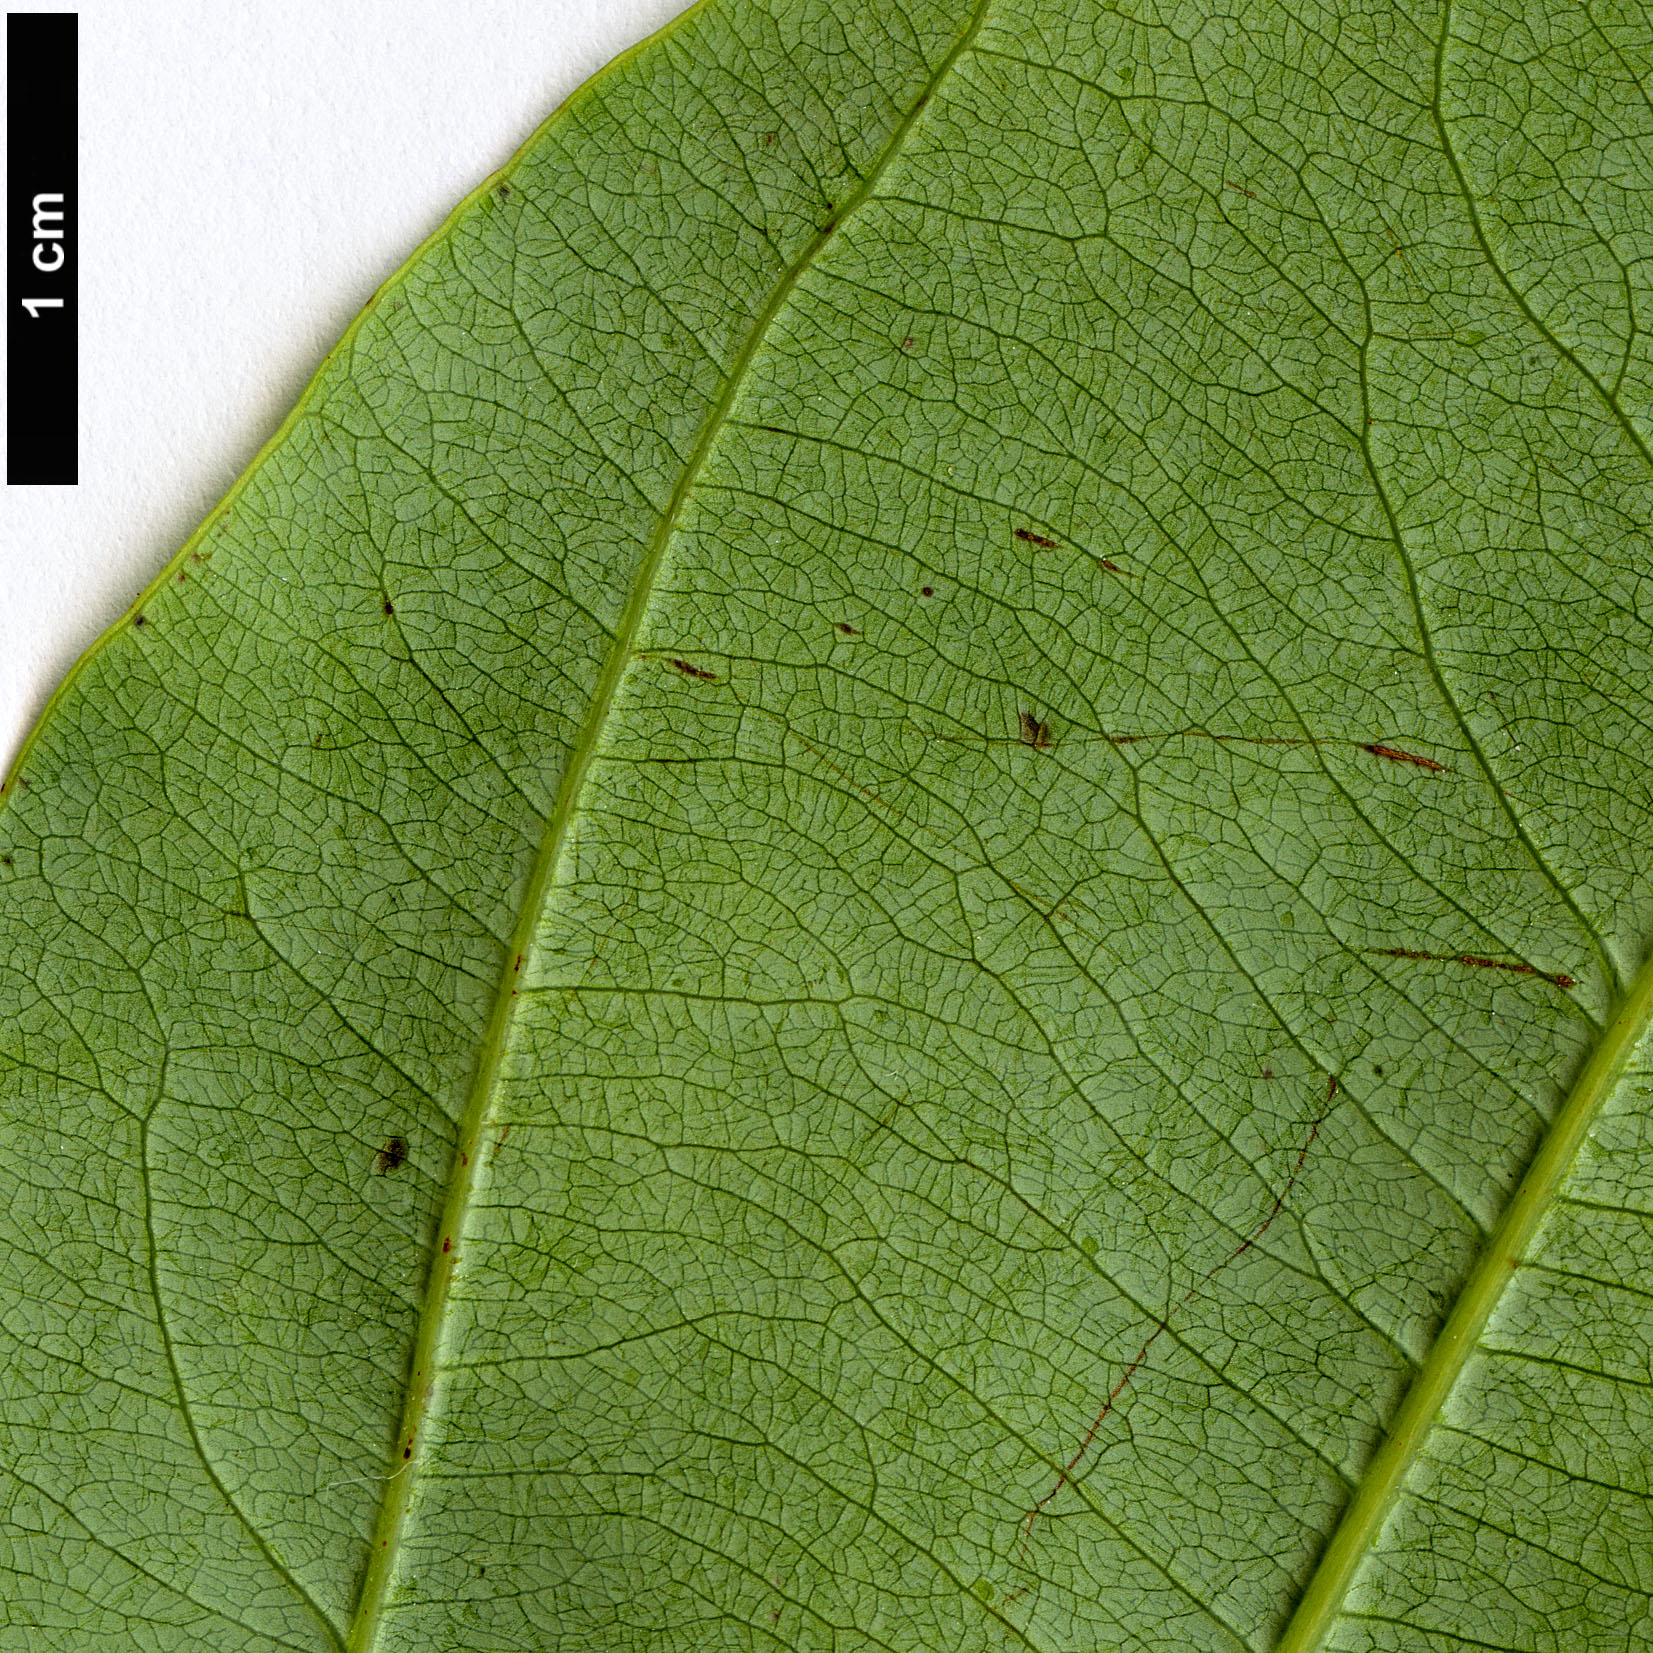 High resolution image: Family: Lauraceae - Genus: Neocinnamomum - Taxon: species